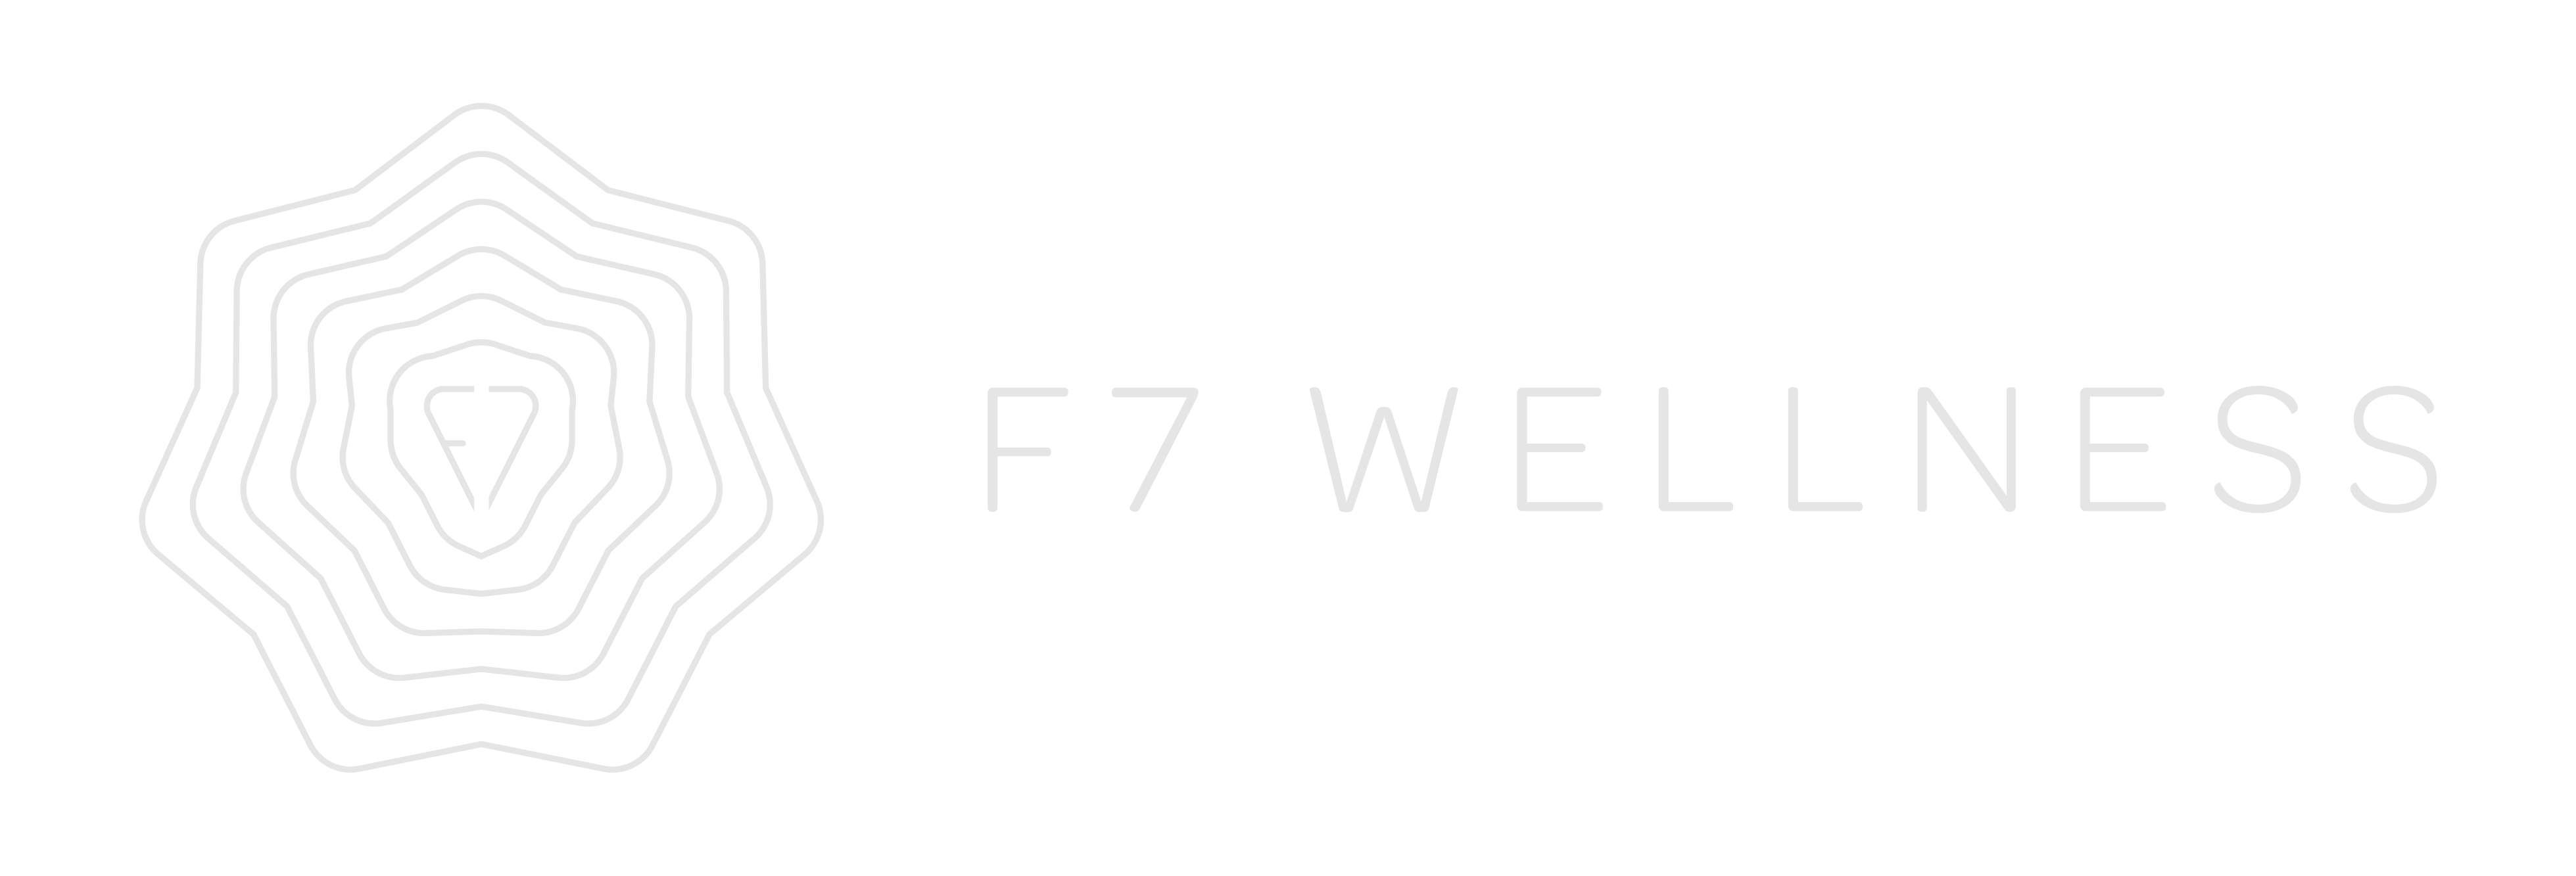 F7Wellness